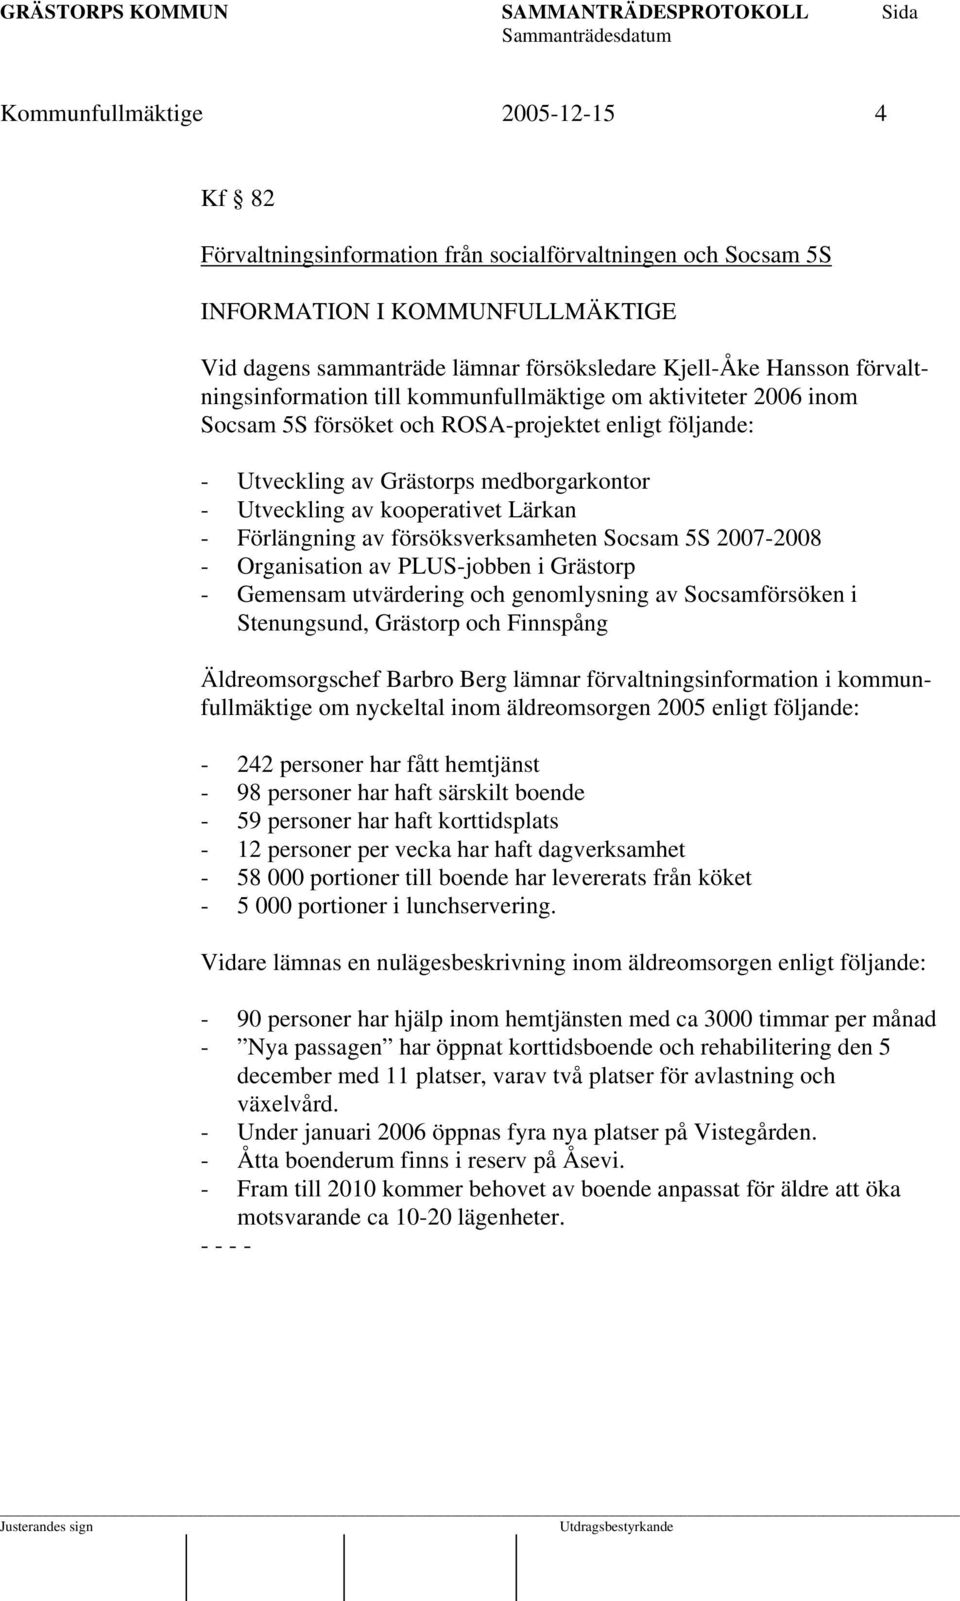 Lärkan - Förlängning av försöksverksamheten Socsam 5S 2007-2008 - Organisation av PLUS-jobben i Grästorp - Gemensam utvärdering och genomlysning av Socsamförsöken i Stenungsund, Grästorp och